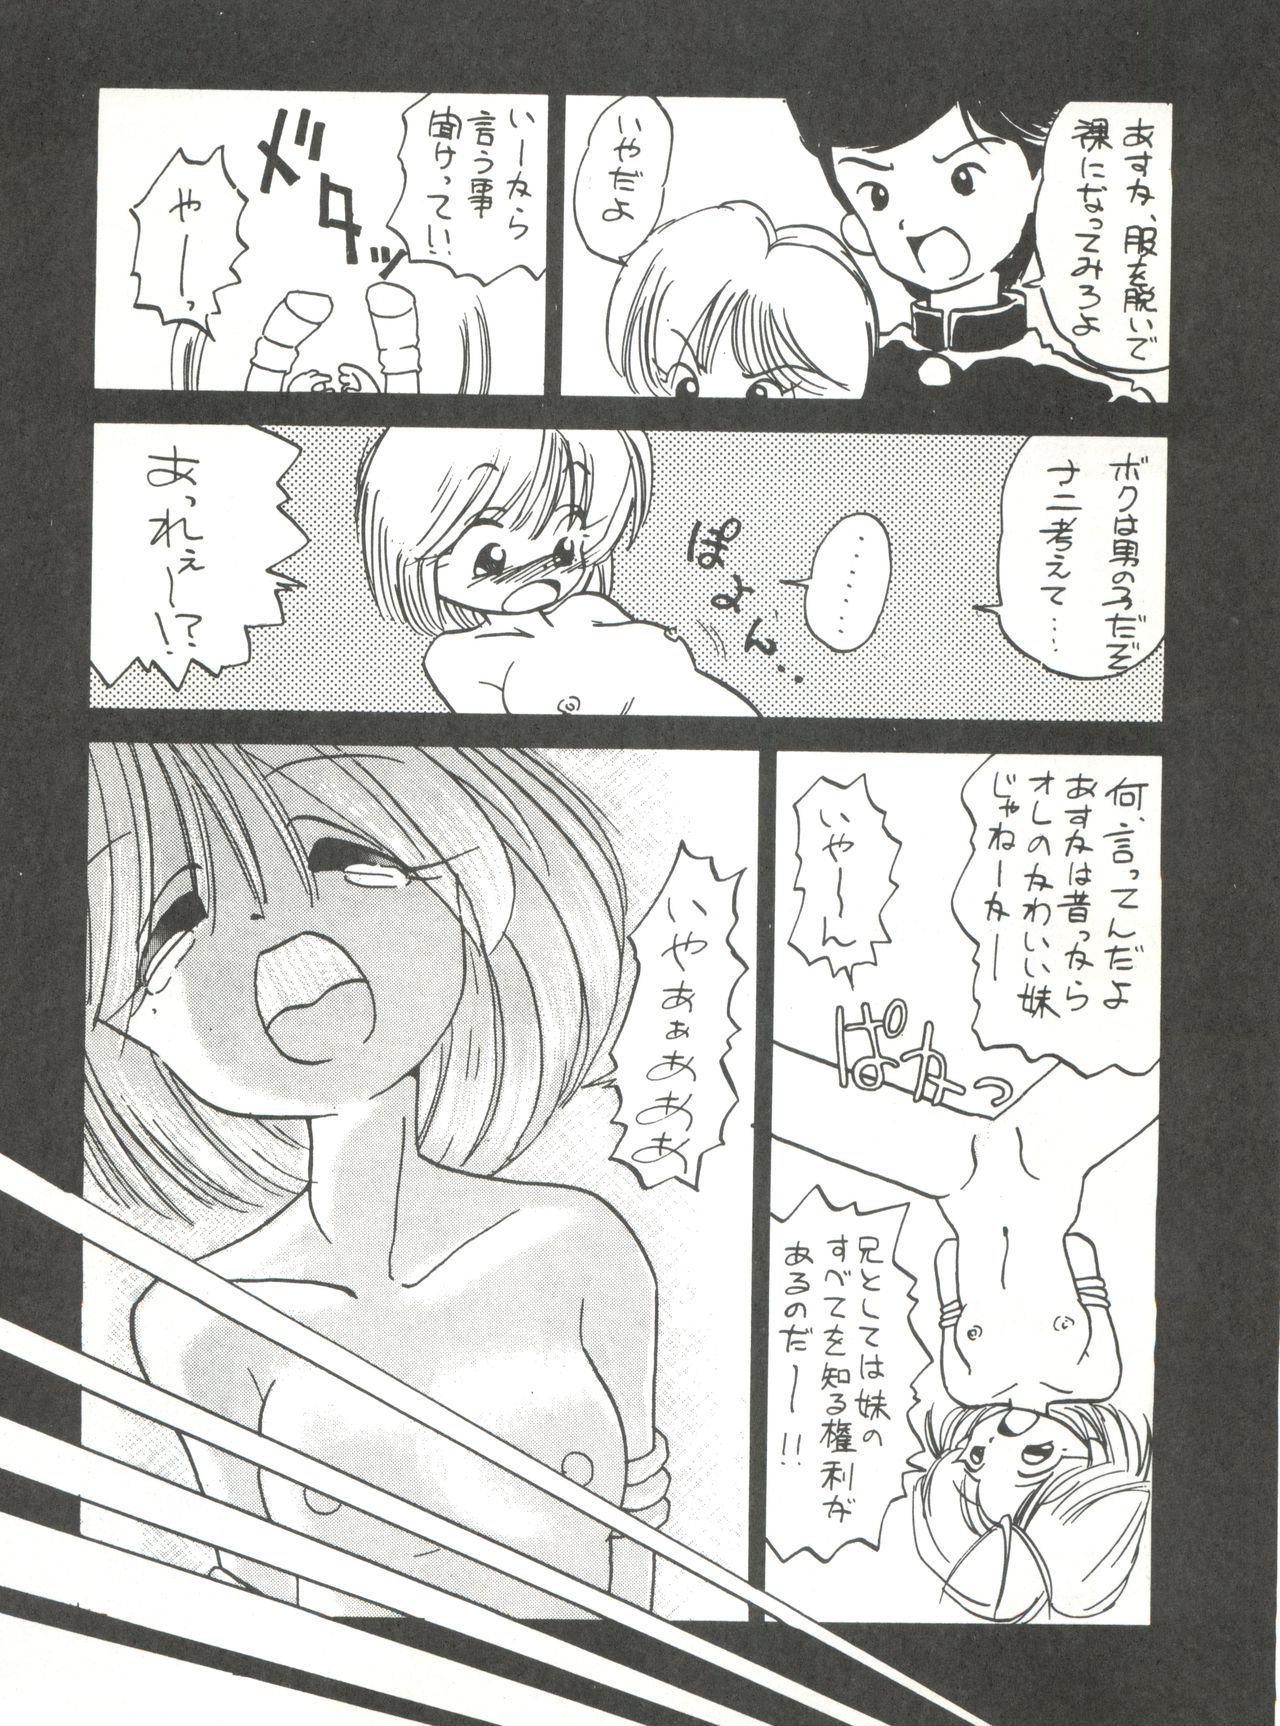 [Mitsuiri House]  MI 16 Mitsuiri House 6 (Hime-chan's Ribbon) + [Ariari no Nashinashi] See You Again 10 (Various) page 40 full